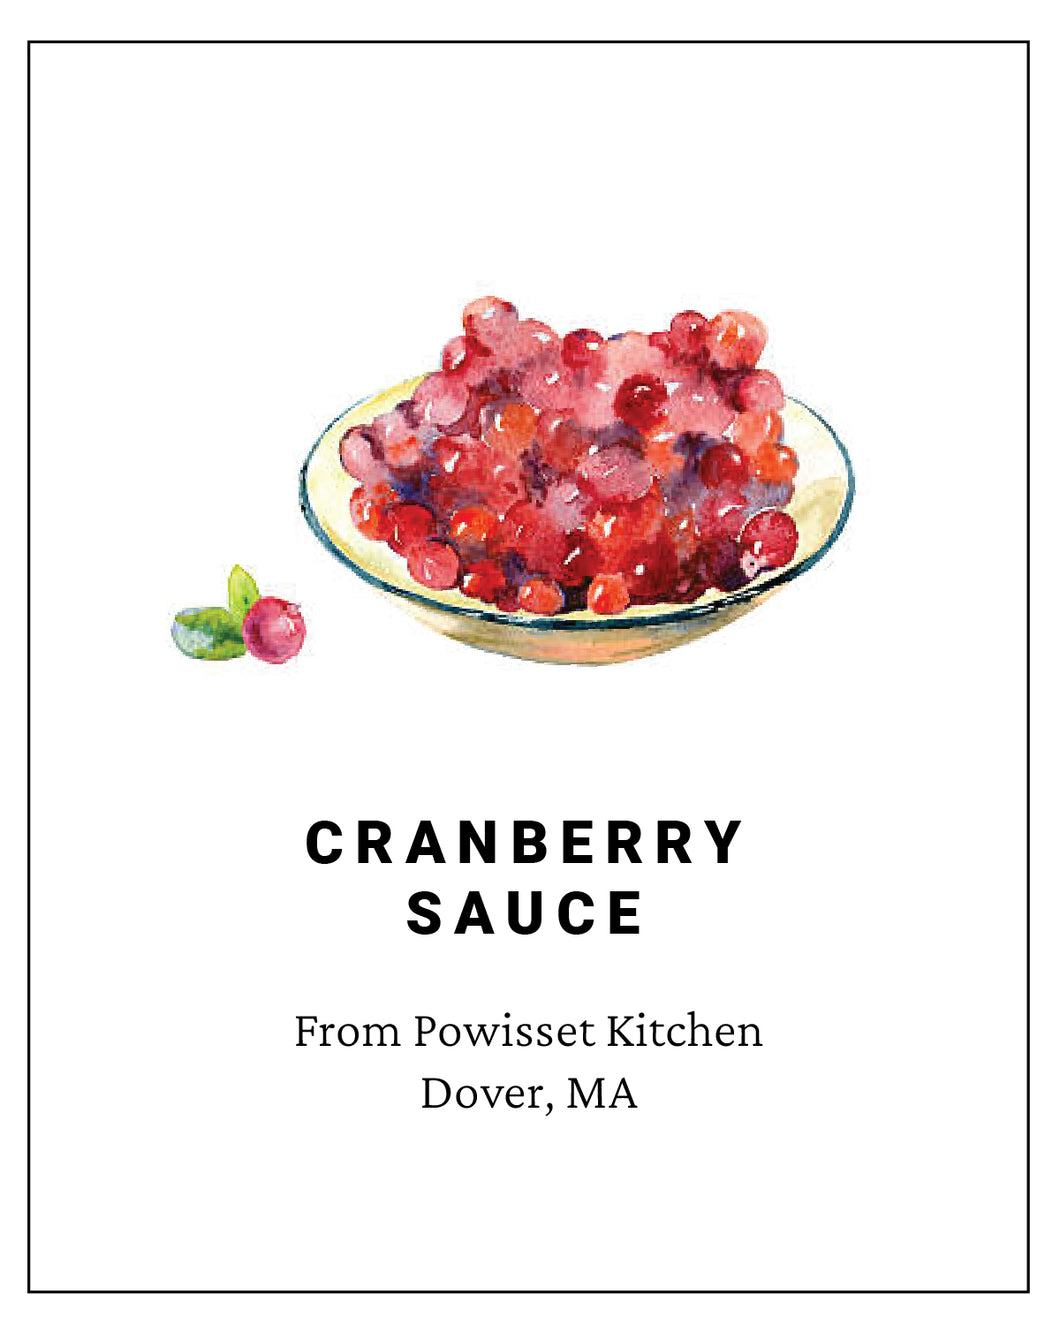 Powisset - Cranberry Sauce